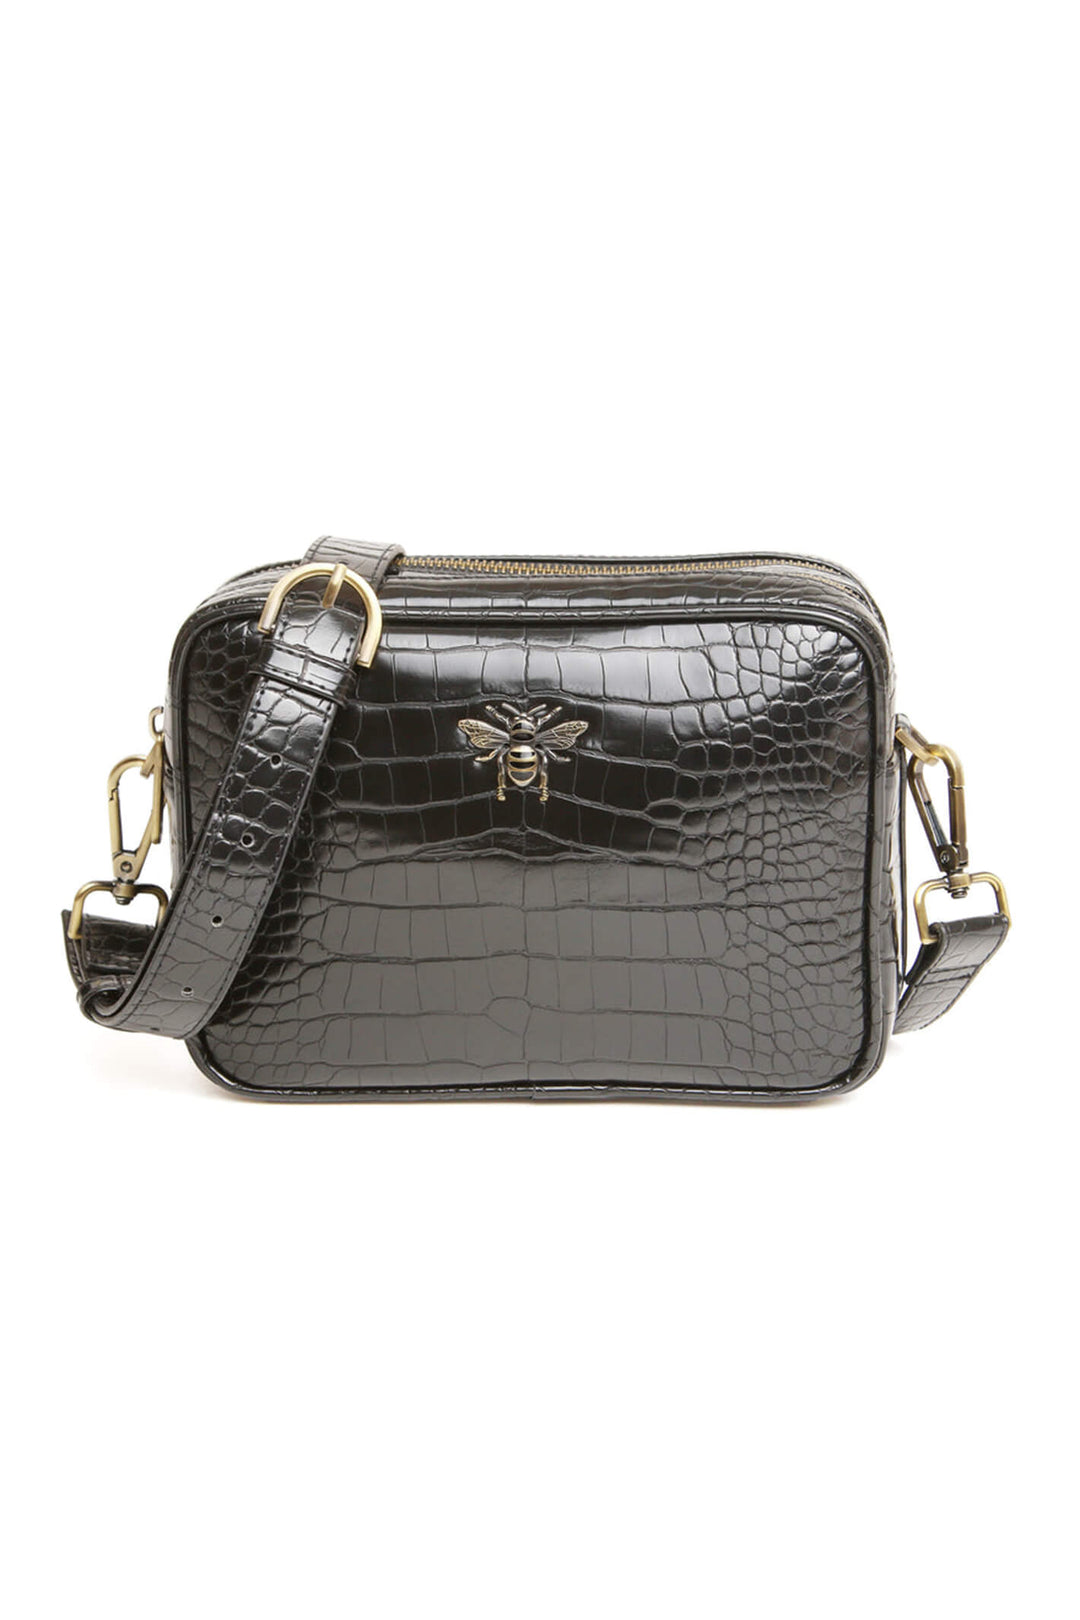 Alice Wheeler AW5954 Black Croc Soho Cross Body Bag - Shirley Allum Boutique